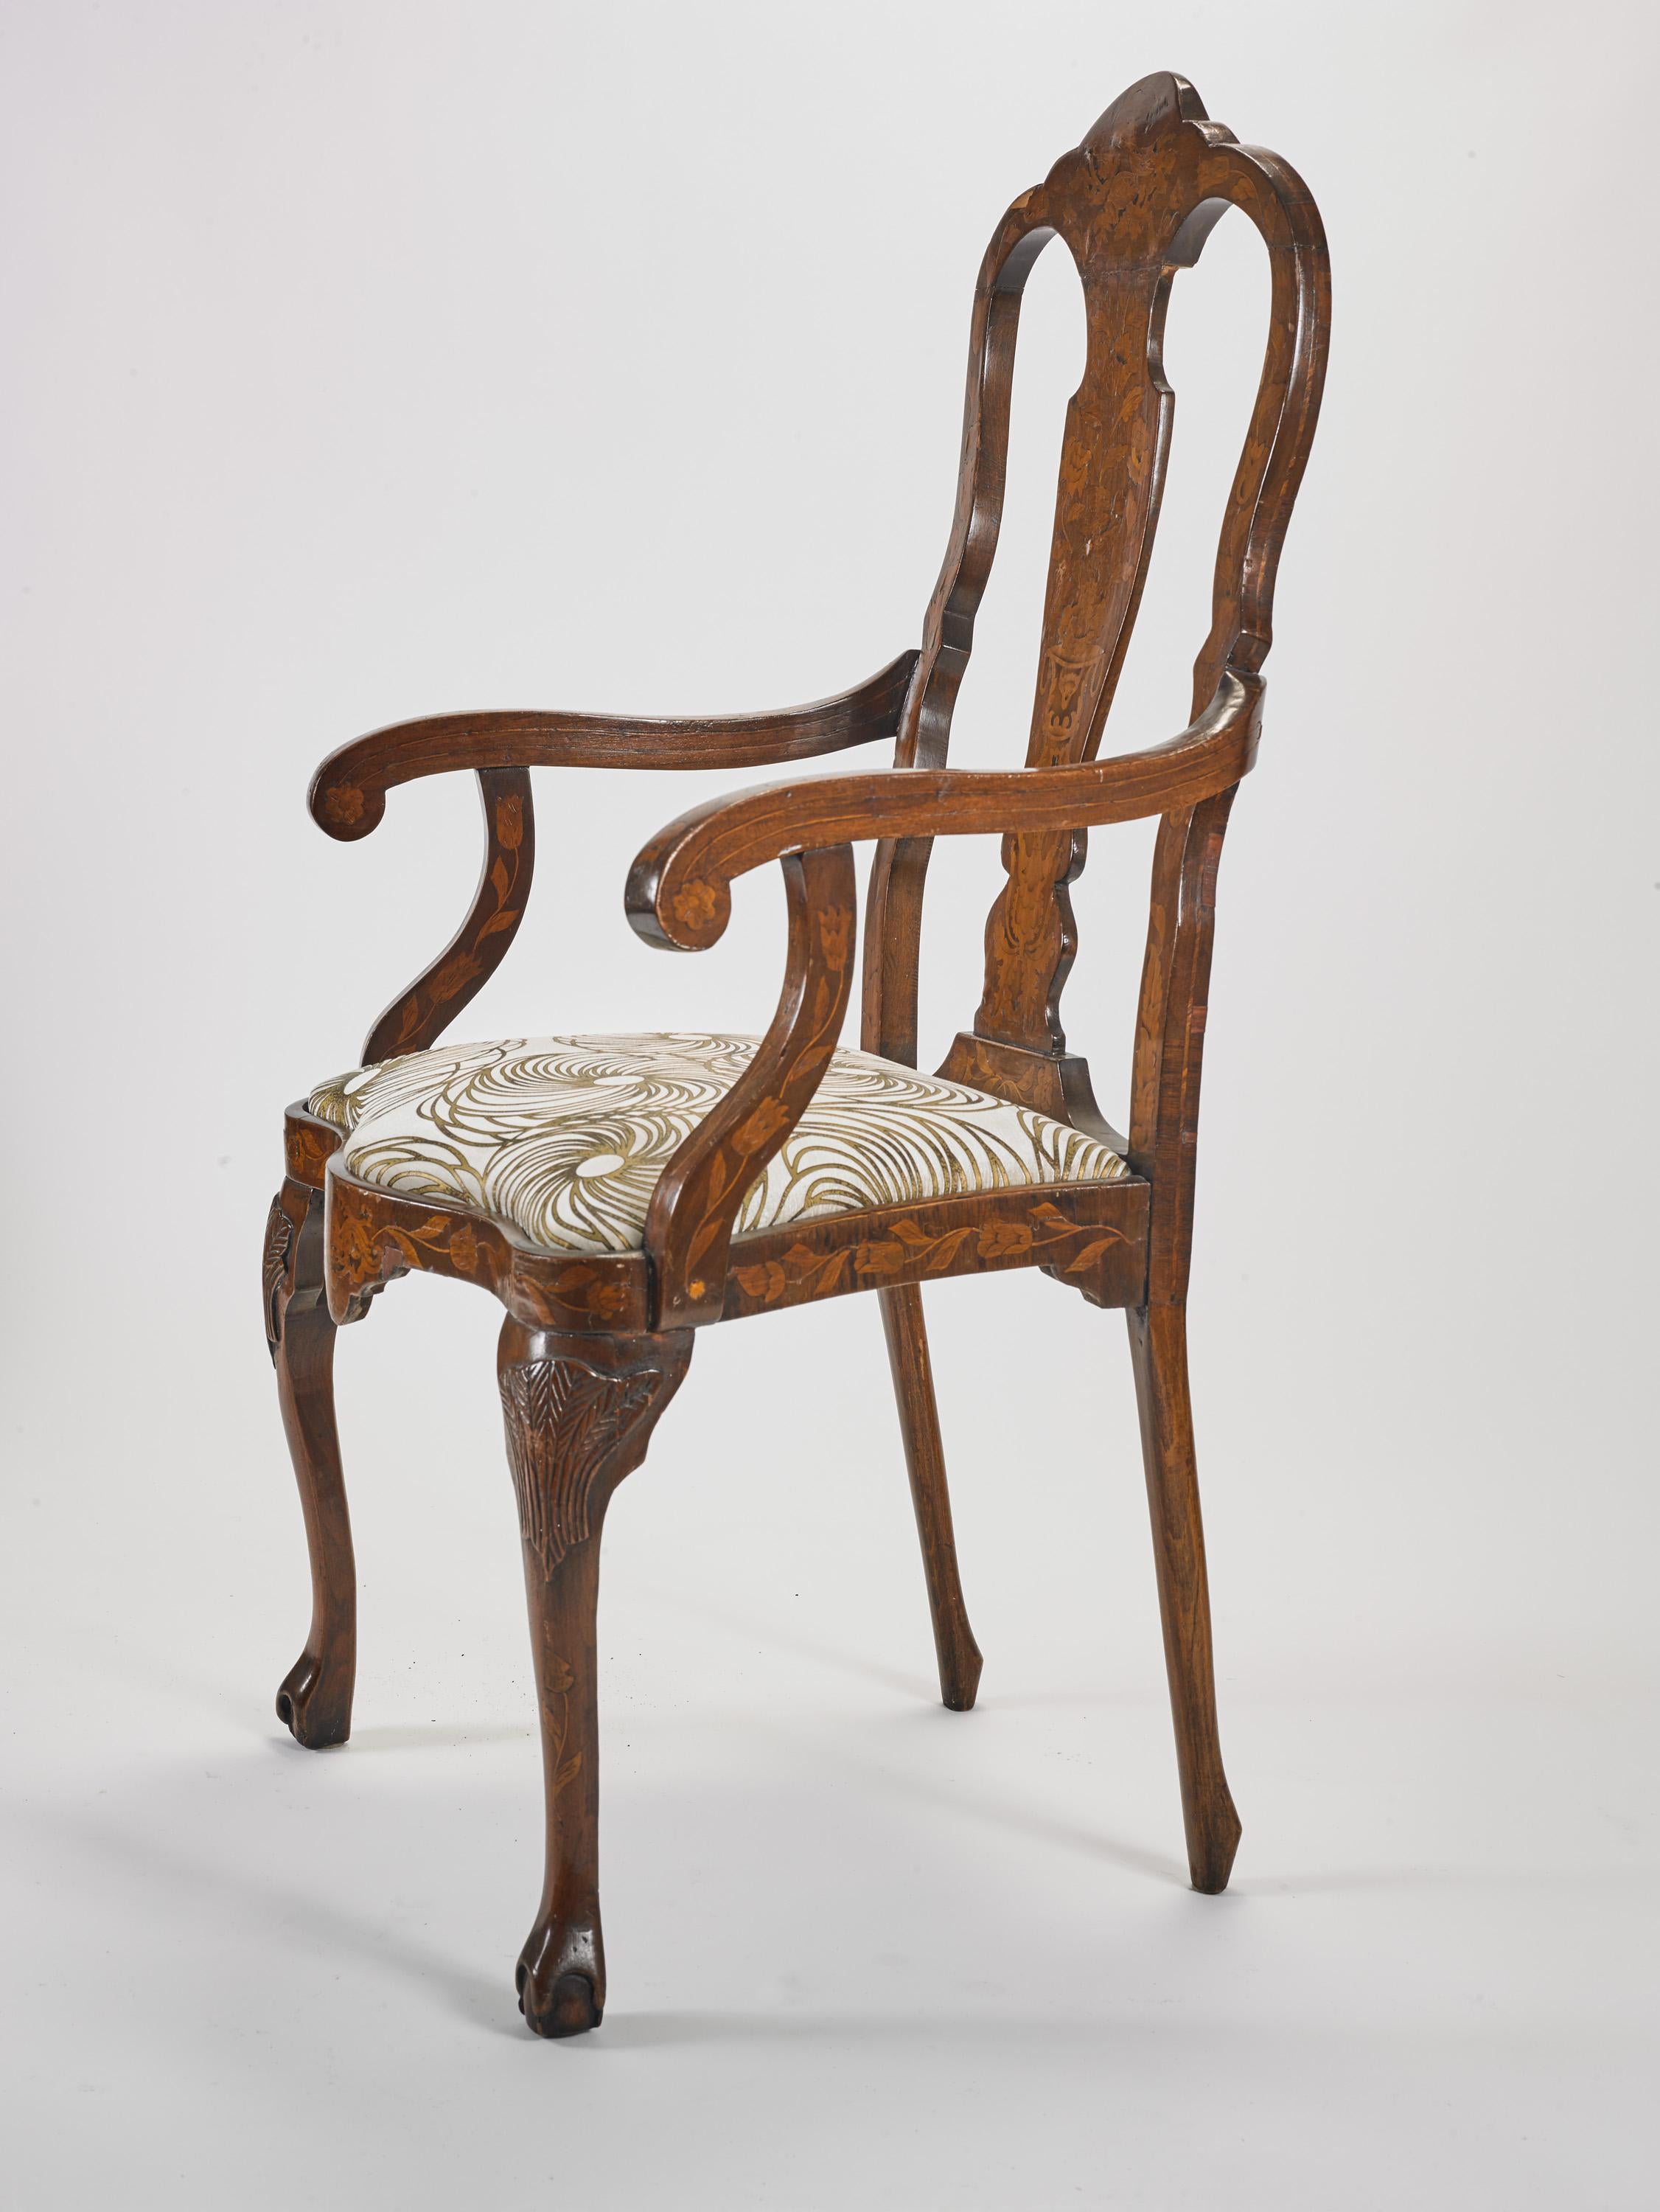 Très gracieux fauteuils queen Anne dutch en bois de noyer, avec marqueterie rappelant les urnes gréco-romaines avec d'abondants motifs floraux, rembourrés, pieds sculptés.